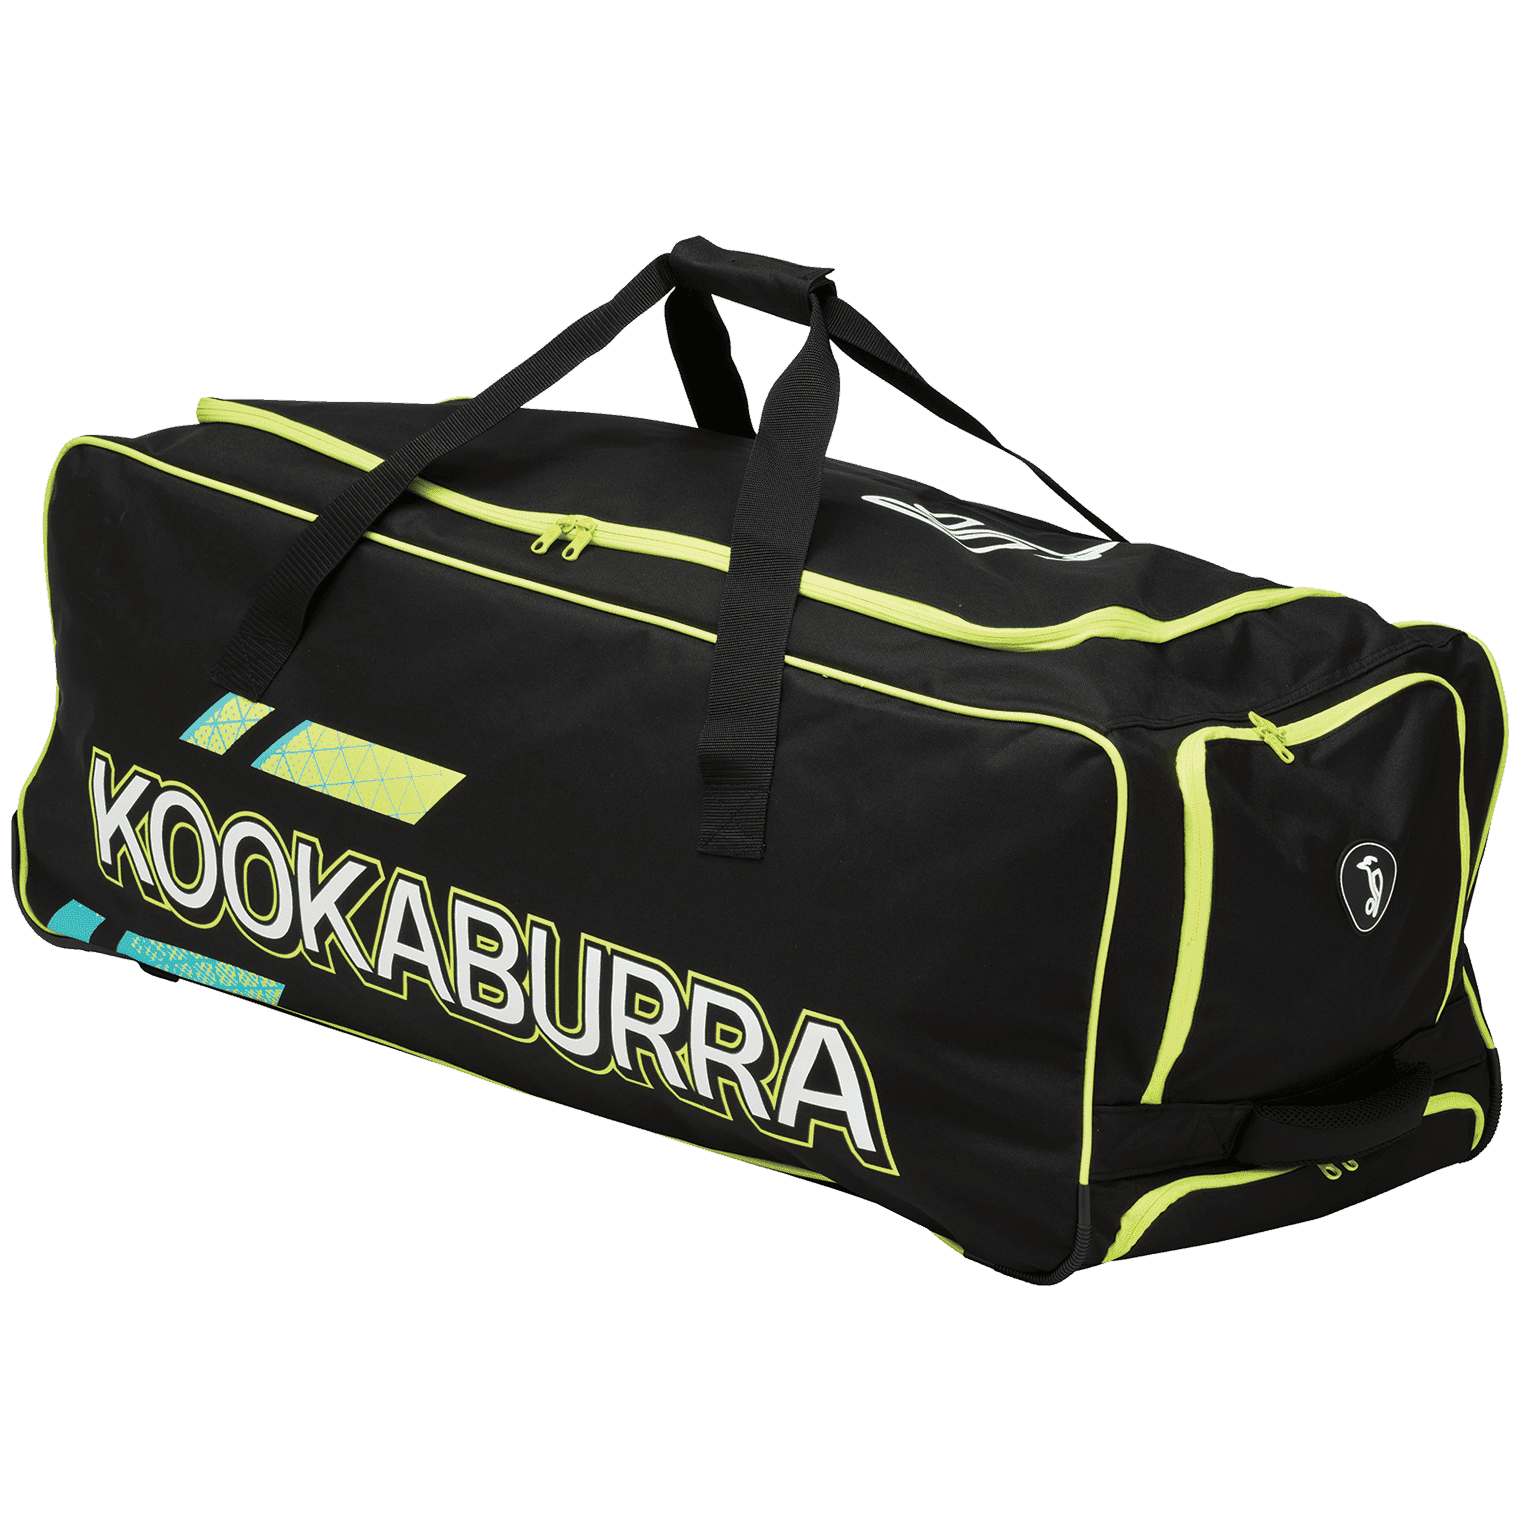 Kookaburra Cricket Bags Yellow Kookaburra 2.0 Wheelie Cricket Bag